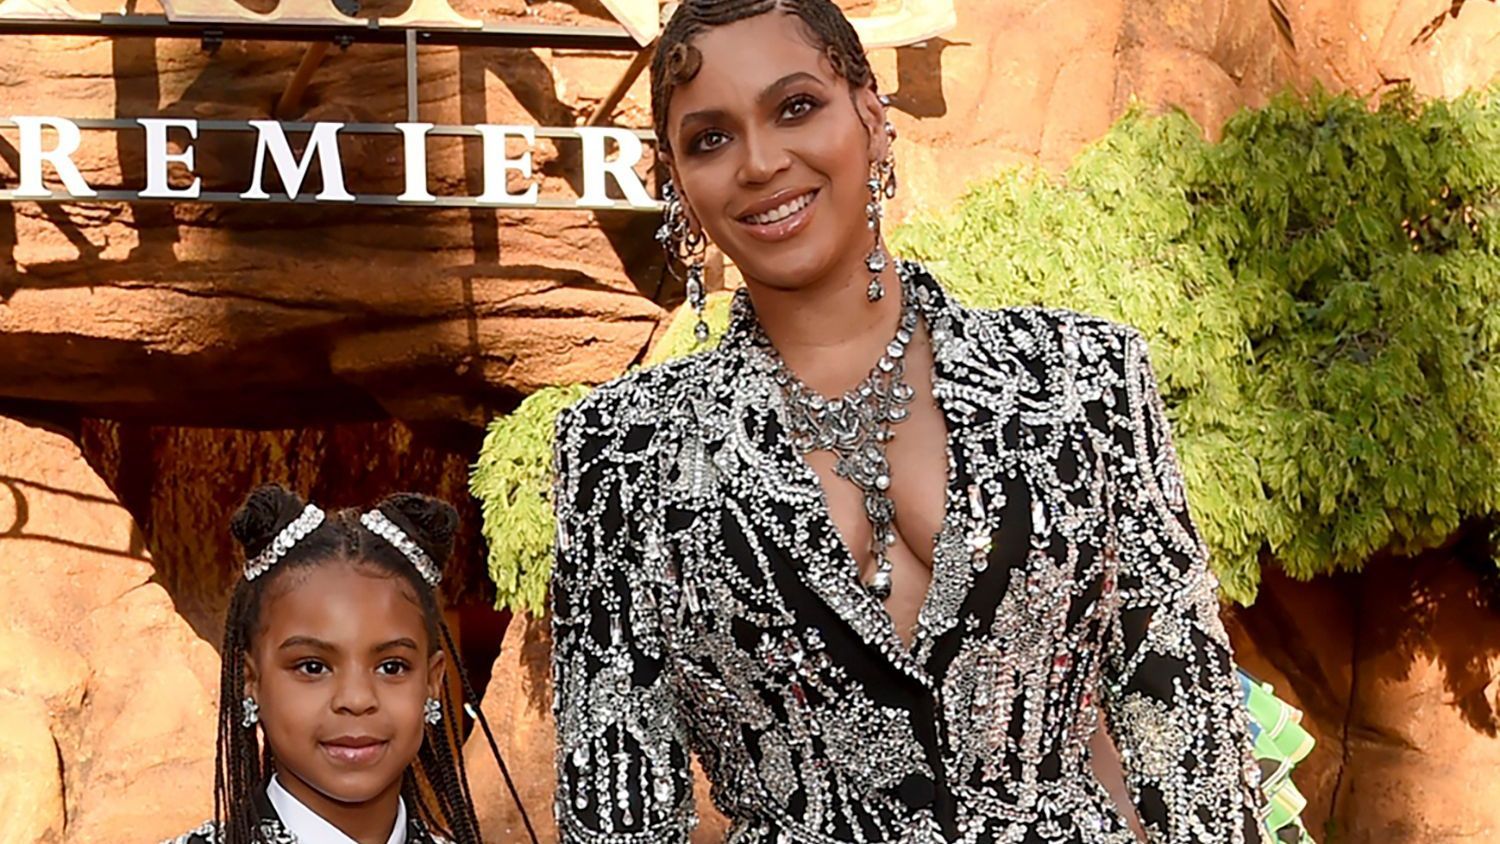 Für ihre Kinder zwei Kinder würde Beyoncé alles tun. So hat sich der Star Bienenstöcke zugelegt, weil ihre beiden Töchter an Allergien leiden. 